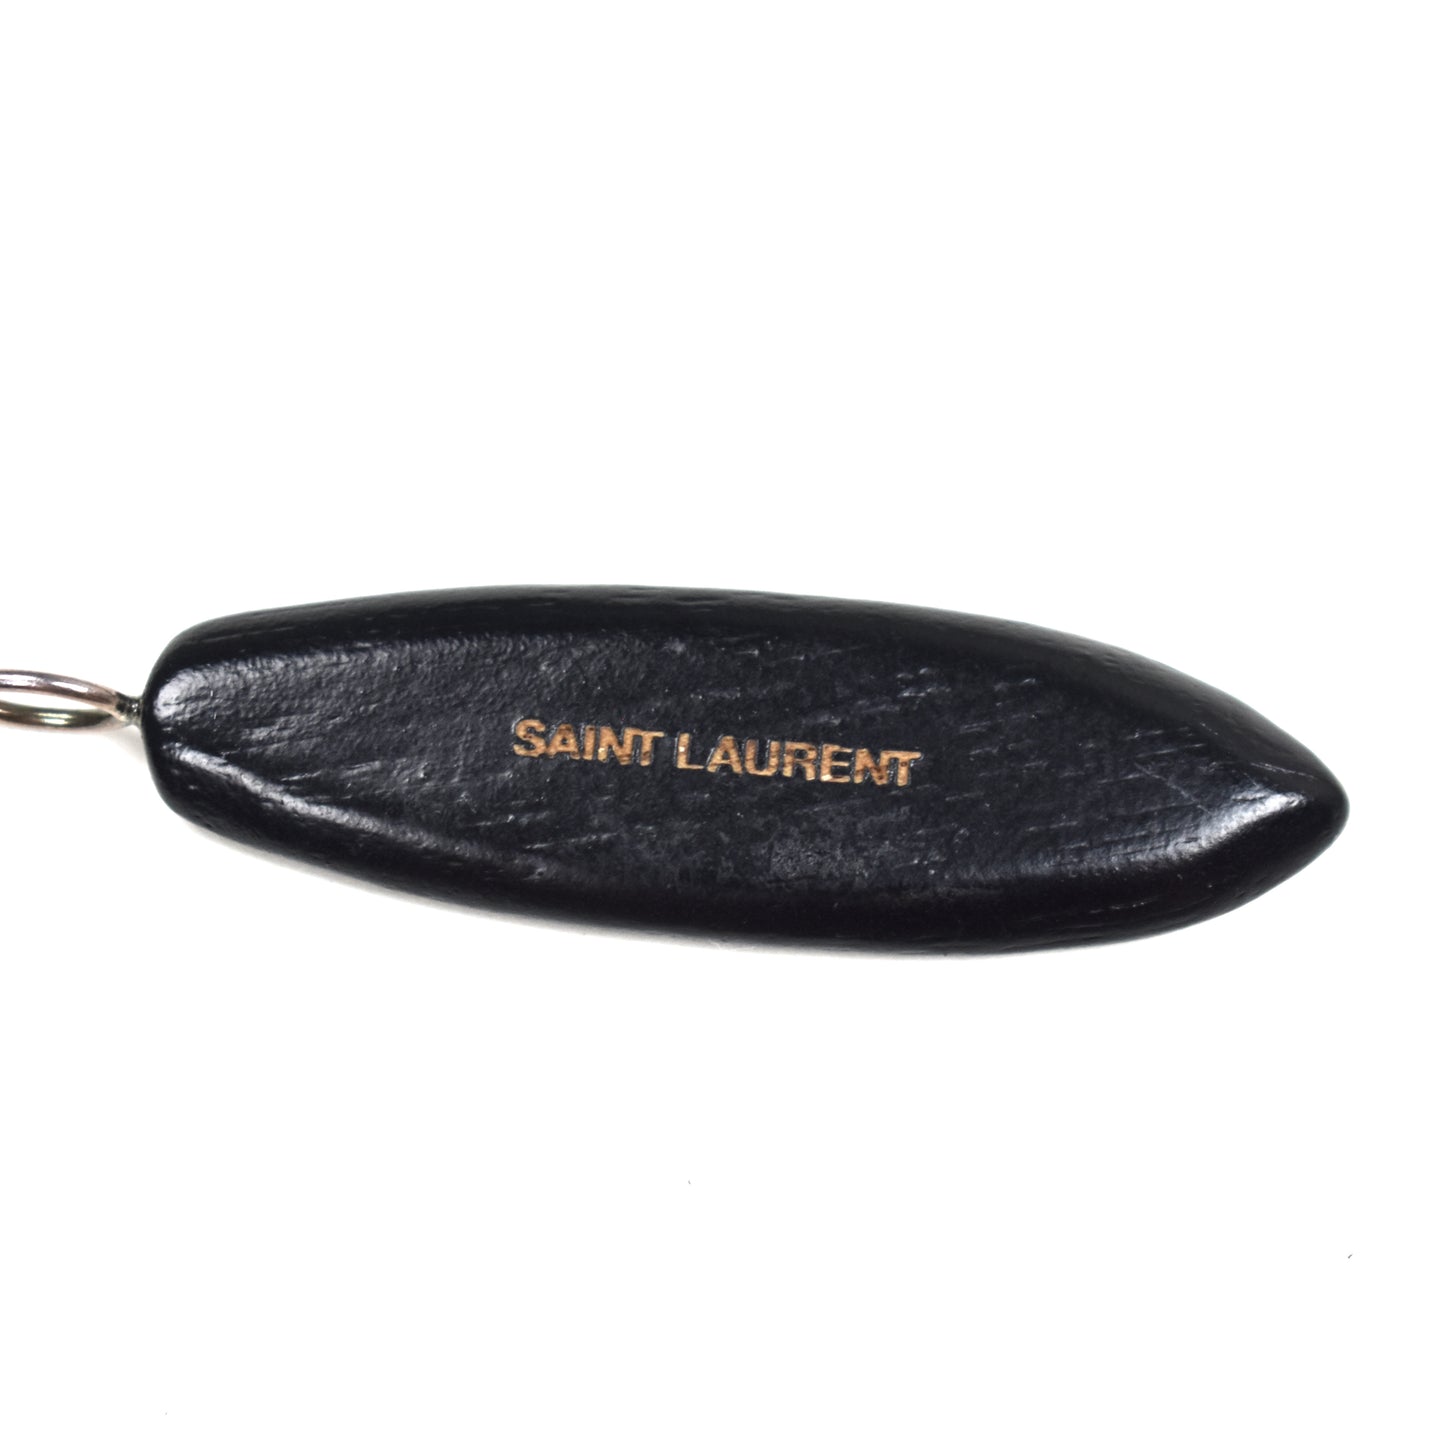 Saint Laurent - Wooden Surfboard Logo Pendant Necklace